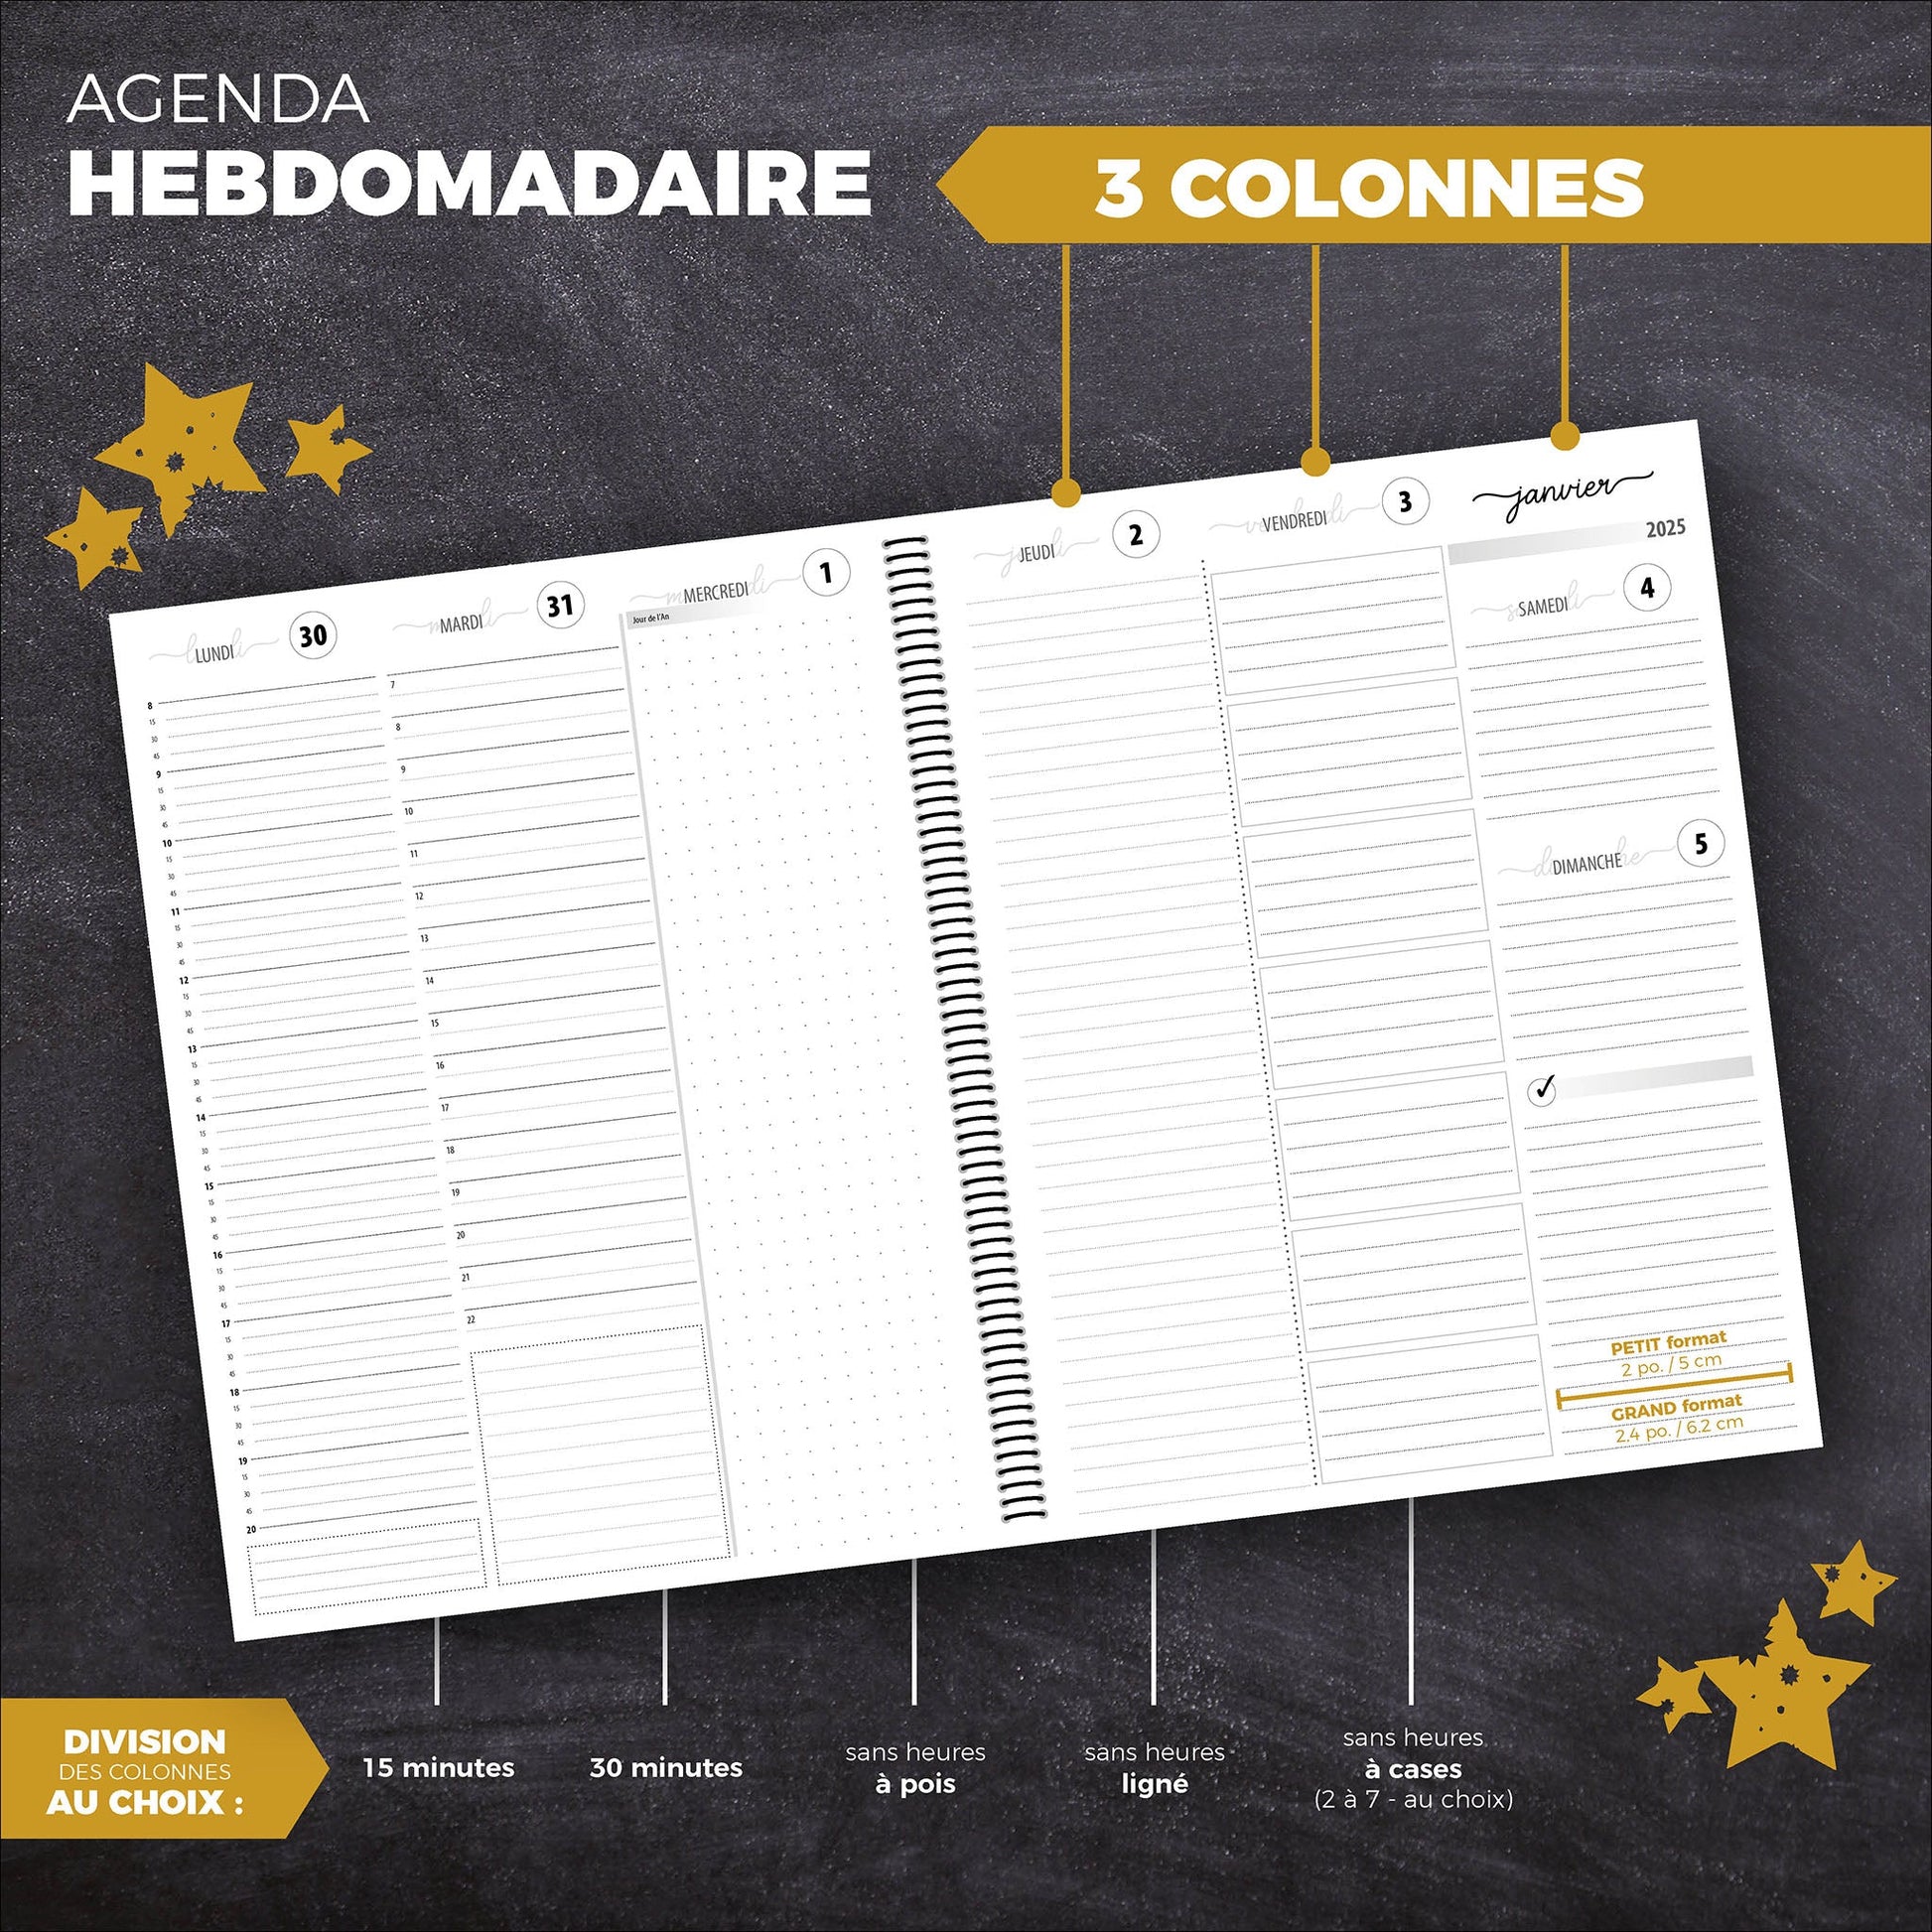 AGENDA | Coraline Boo (Licorne) - Papeterie d'Or et d'Étoiles